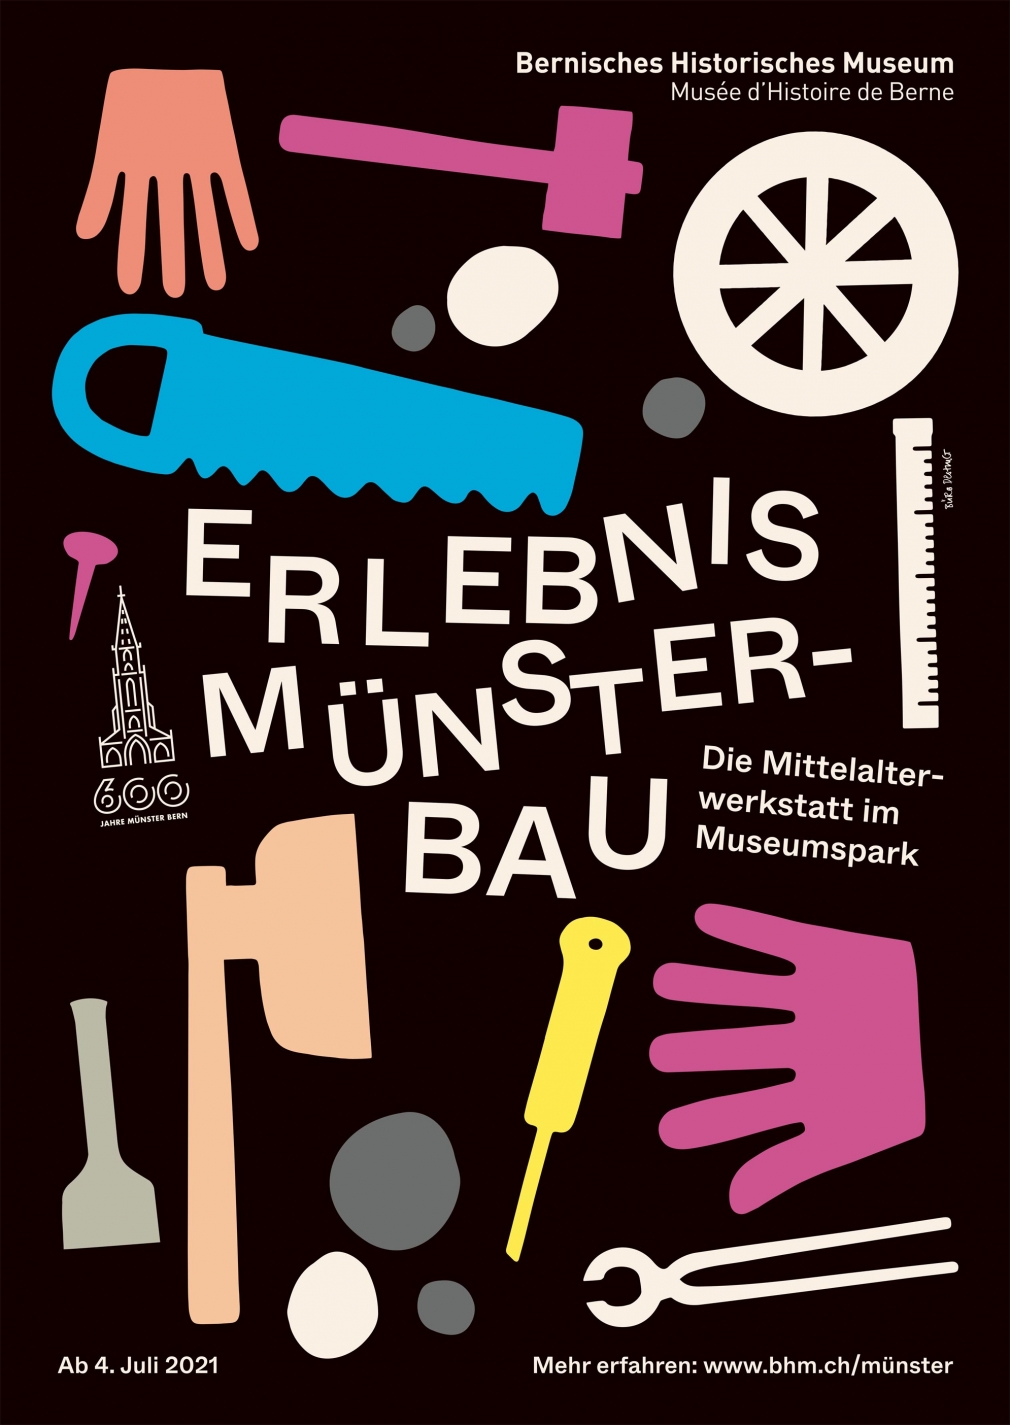 Erlebnis Münsterbau, BHM poster